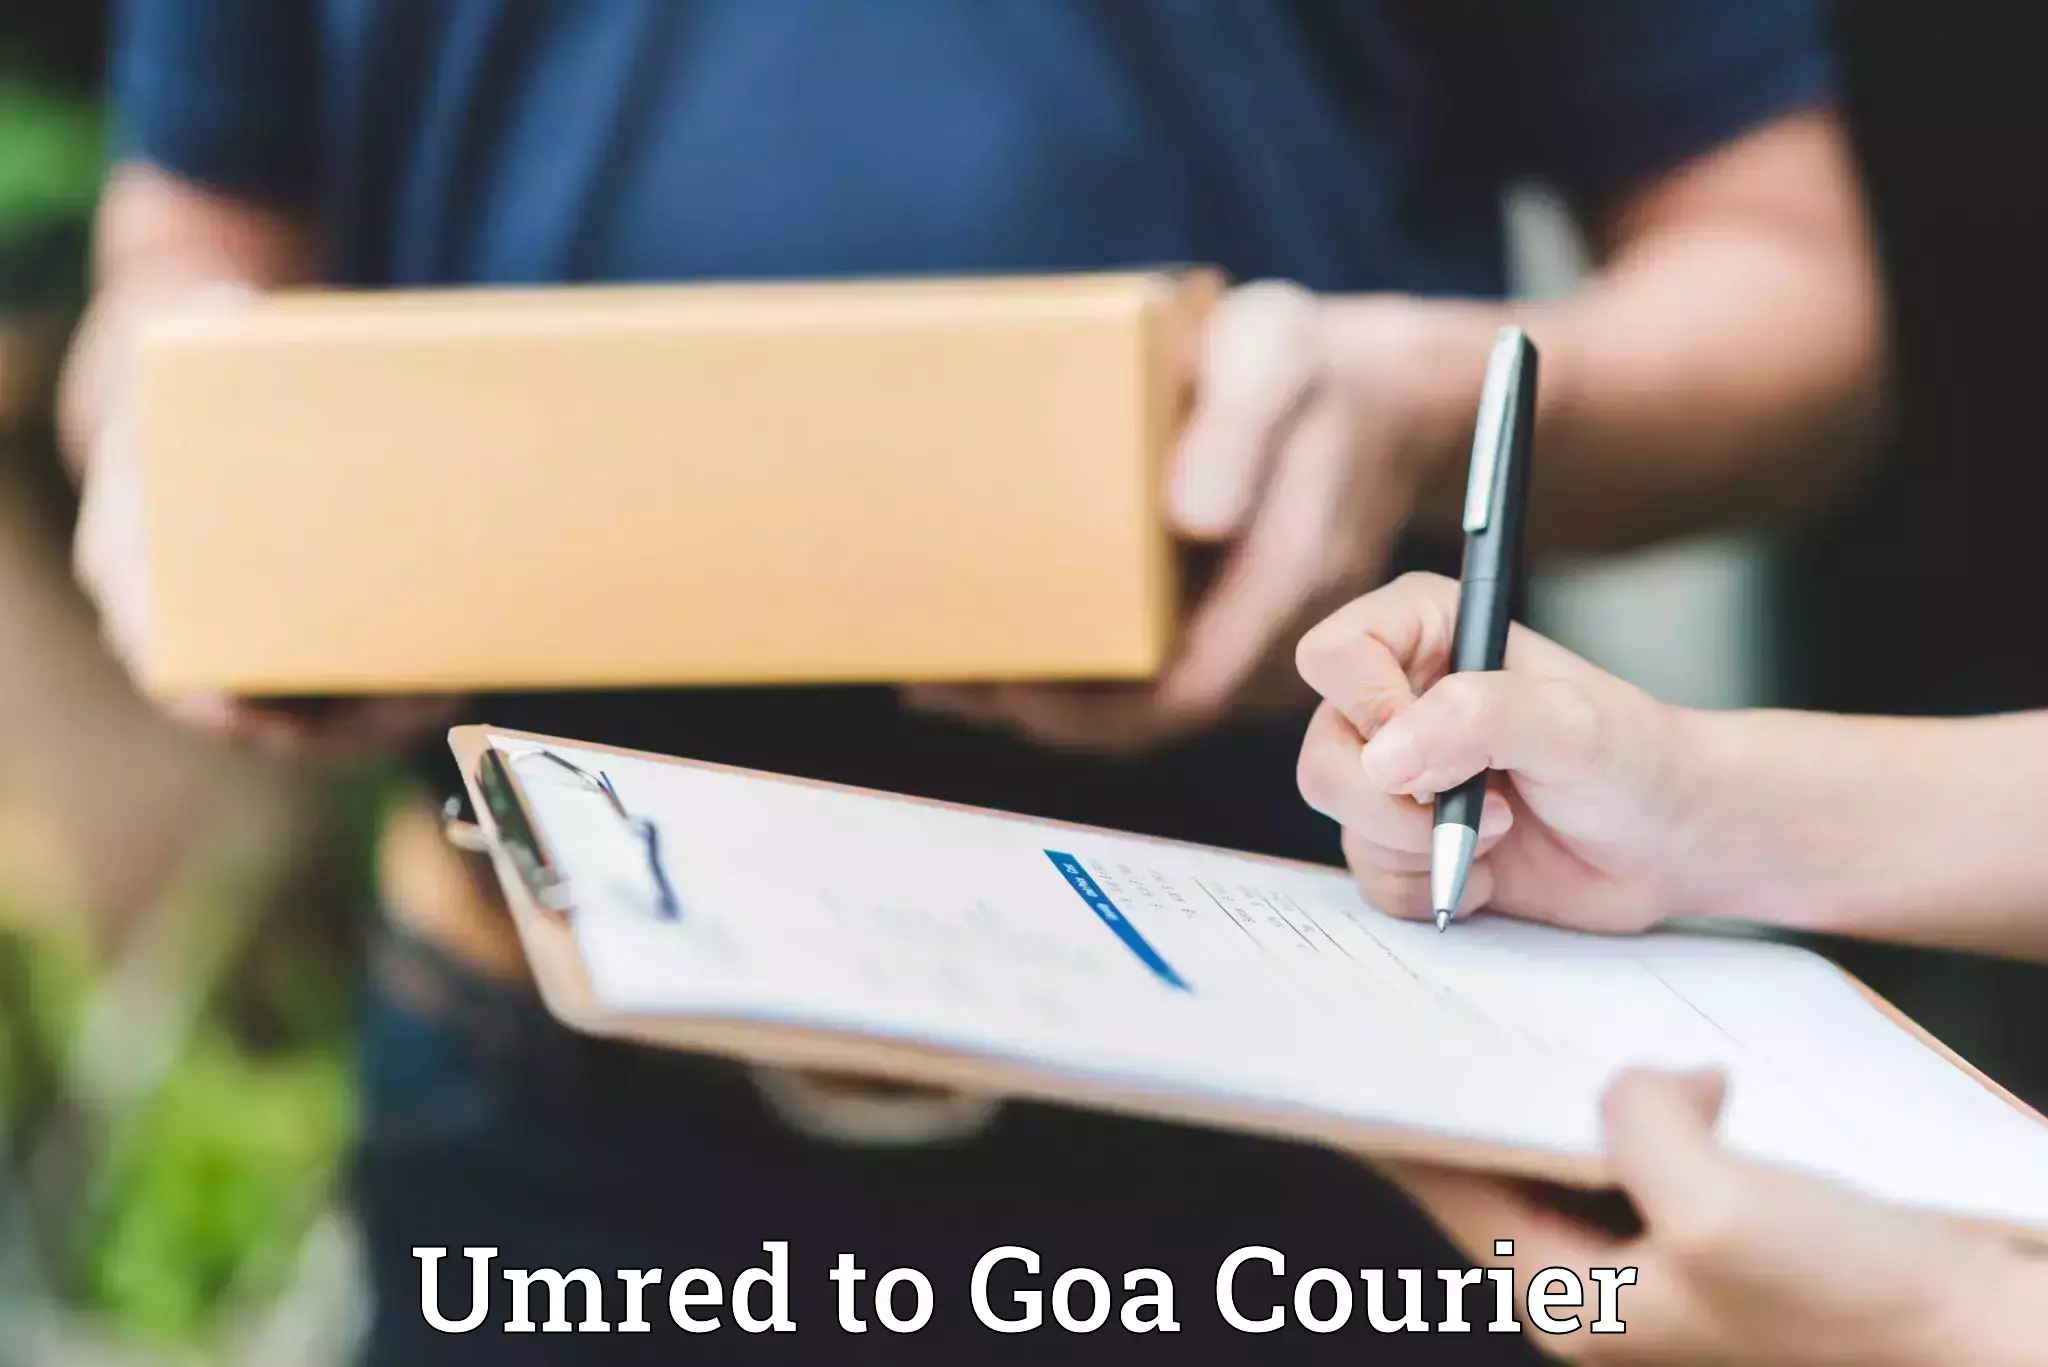 Luggage transport operations Umred to Goa University